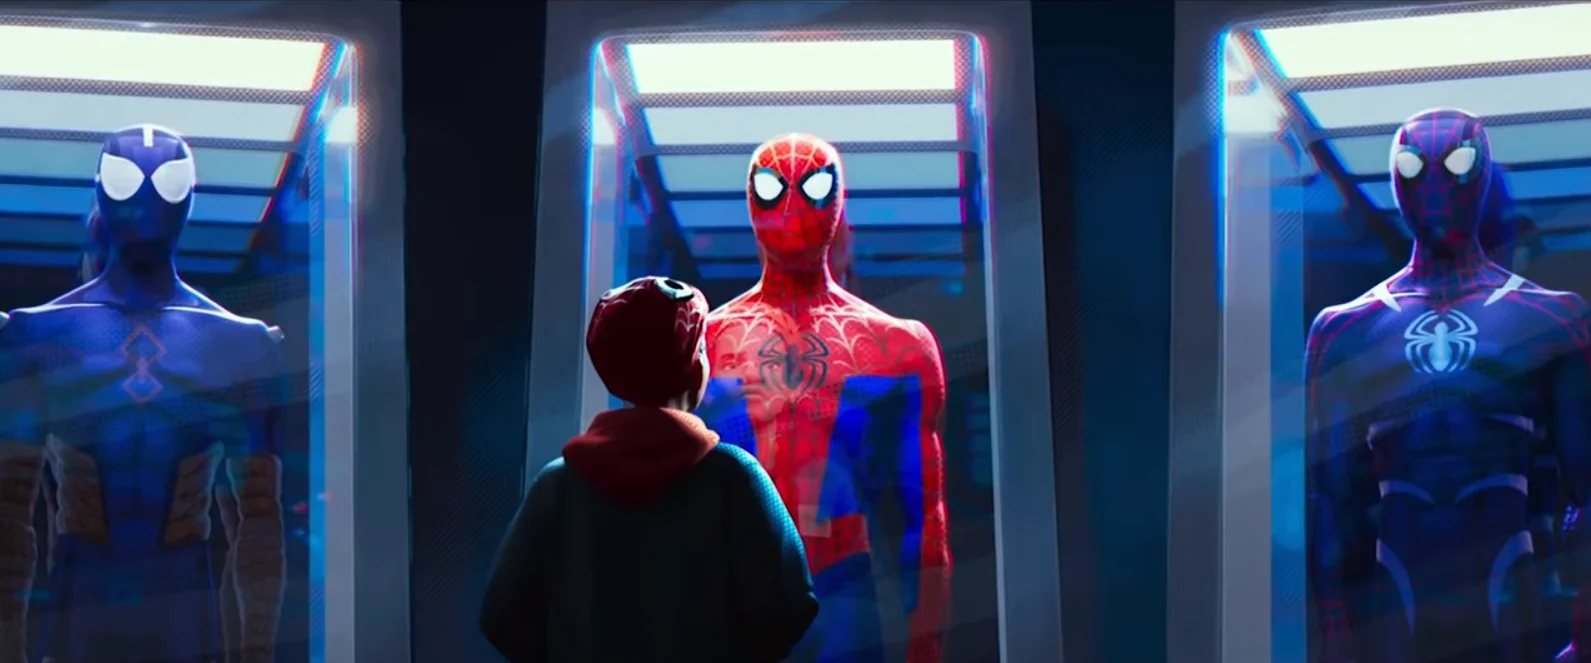 Что показали в трейлере Spider-Man: Into the Spider-Verse. Зеленый гоблин, Гвен-паук и Кингпин? - фото 9